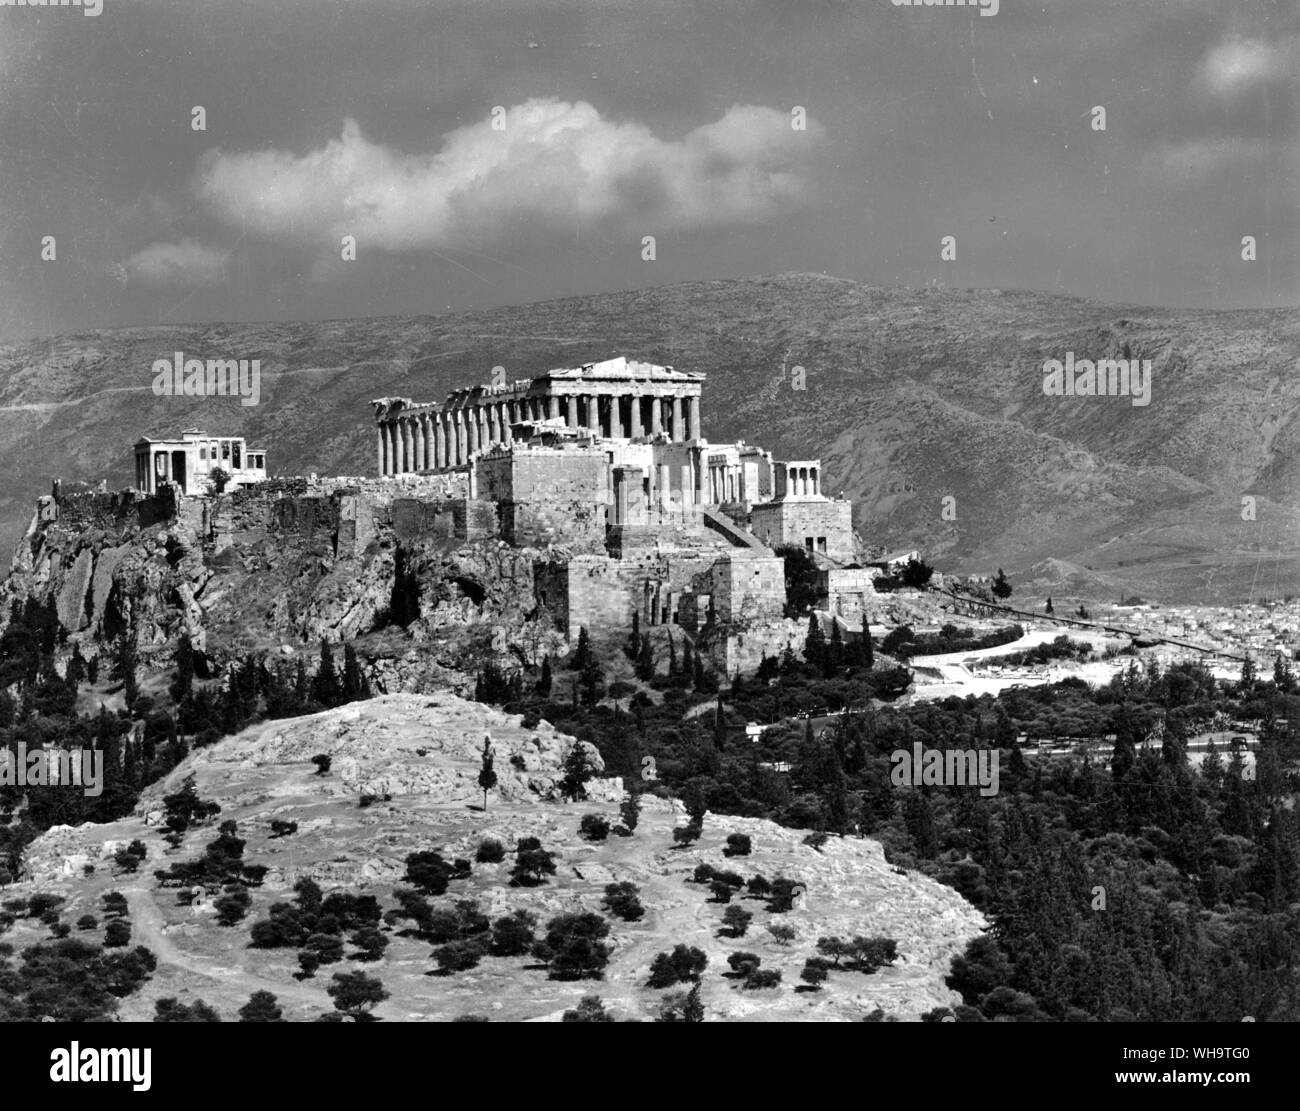 Die Akropolis, ein großer Felsen südlich von Athen, trägt Reste von Tempeln und Wände aus Vor-Griechische und sechsten Jahrhundert Tage. Cimon gebaut, um die großen Wände in den frühen fünften Jahrhundert und die wichtigsten Gebäude wurden unter der Leitung des Perikles nach 450 v. Chr. Stockfoto